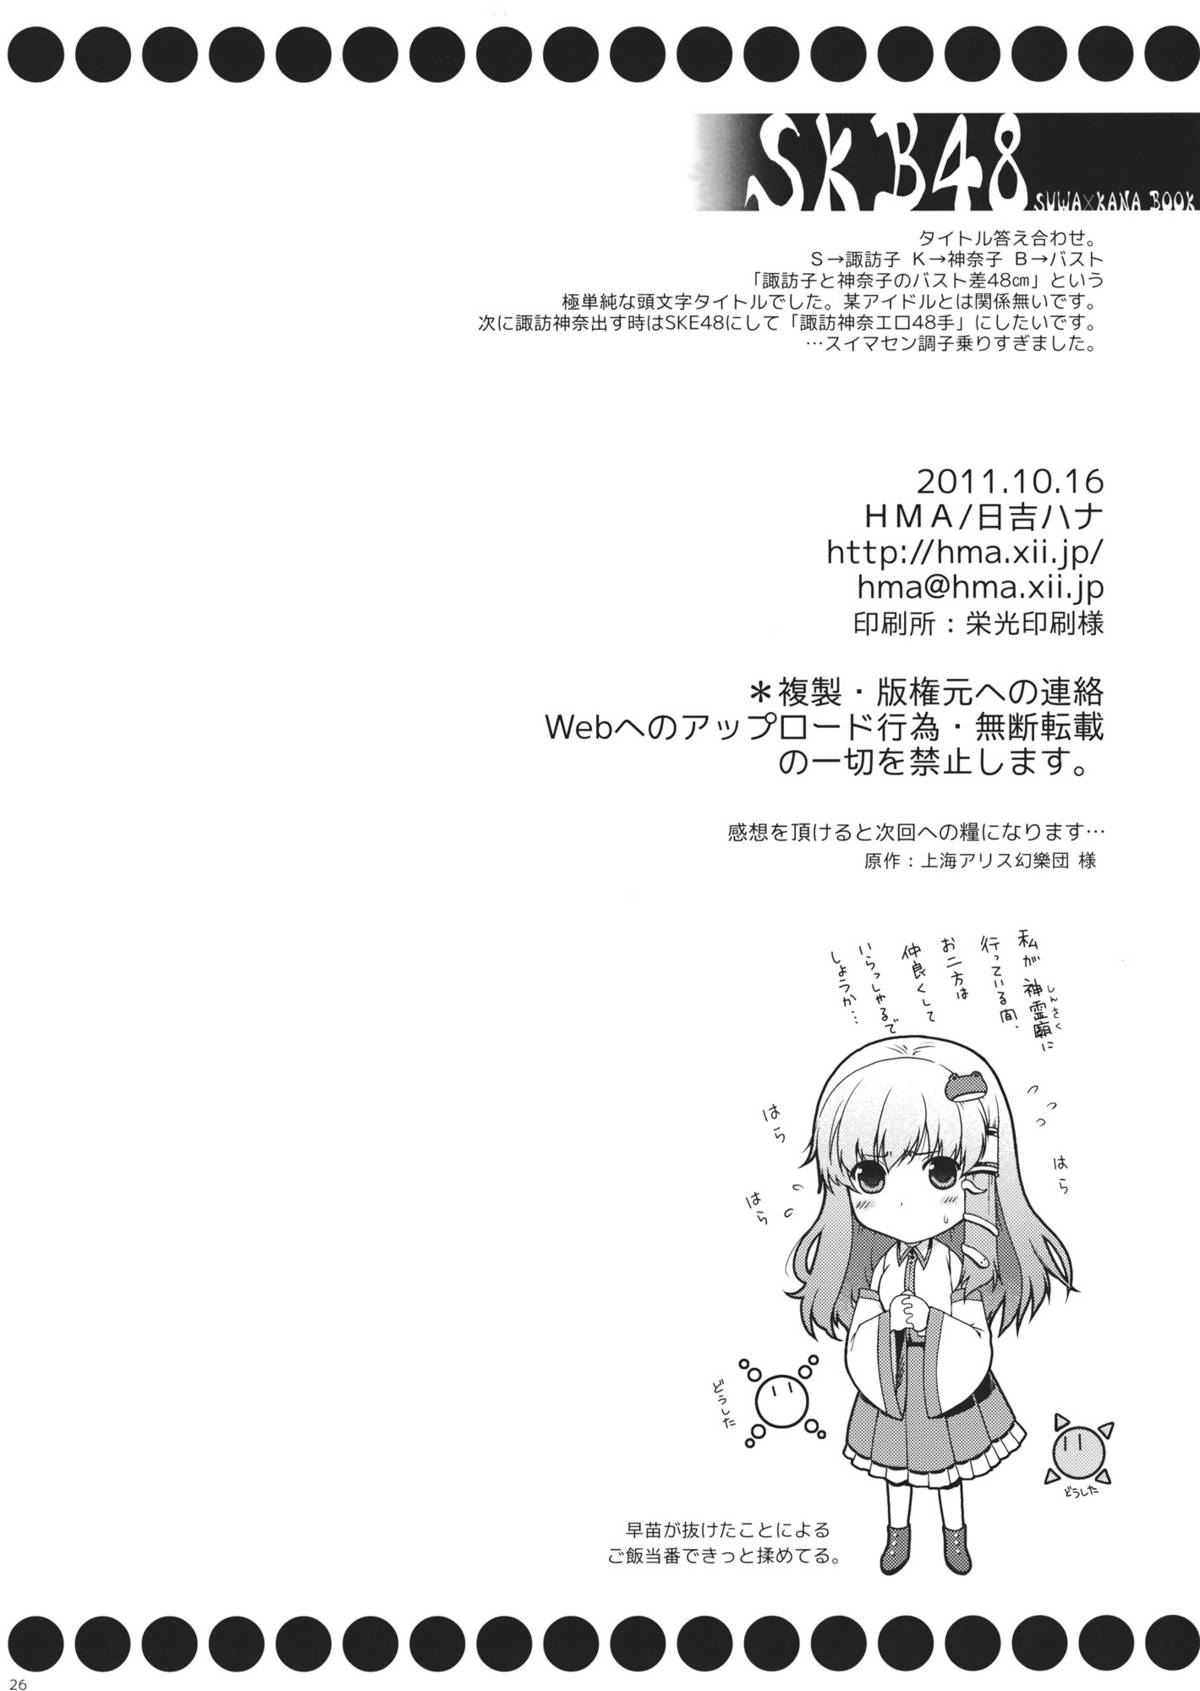 (紅楼夢7) [HMA (日吉ハナ)] SKB48 (東方Project)